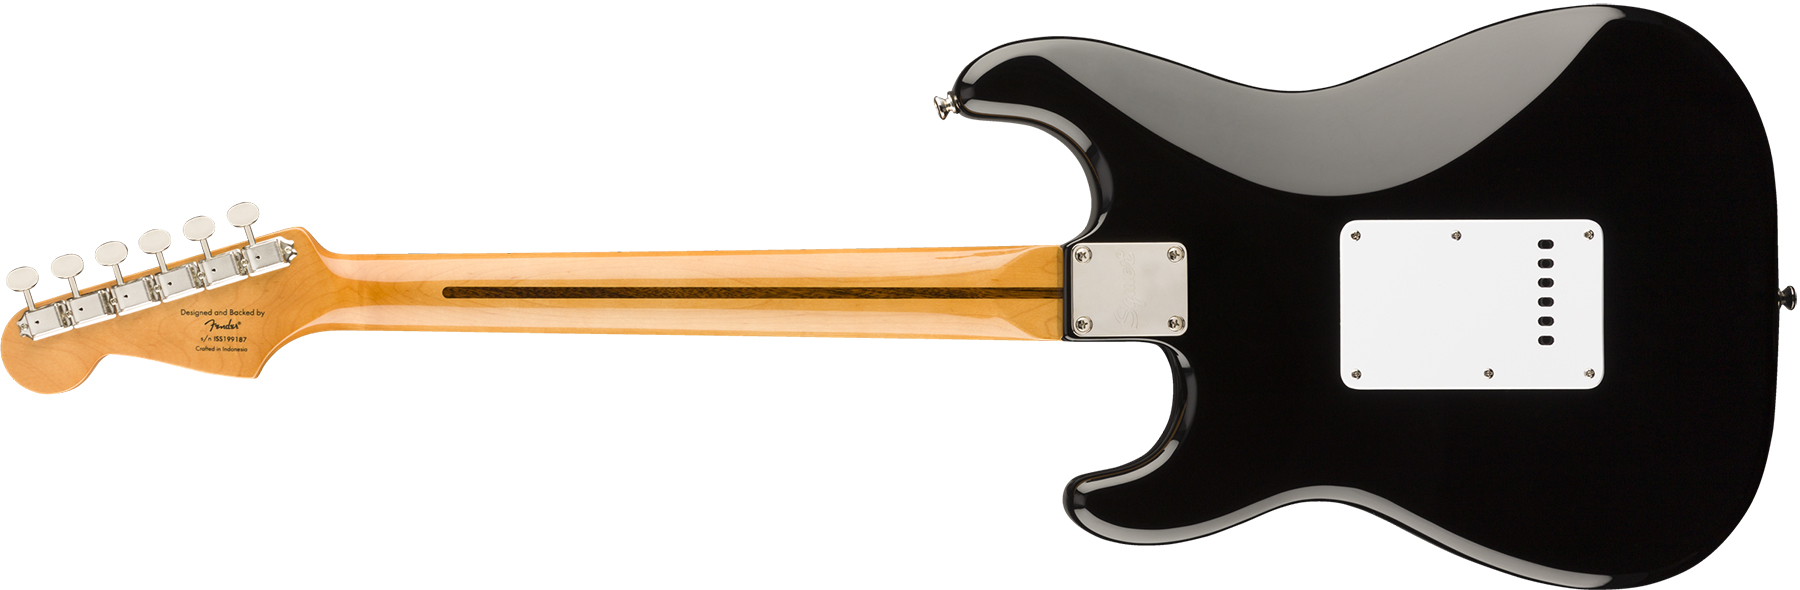 Squier Strat '50s Classic Vibe 2019 Mn 2019 - Black - Guitarra eléctrica con forma de str. - Variation 1